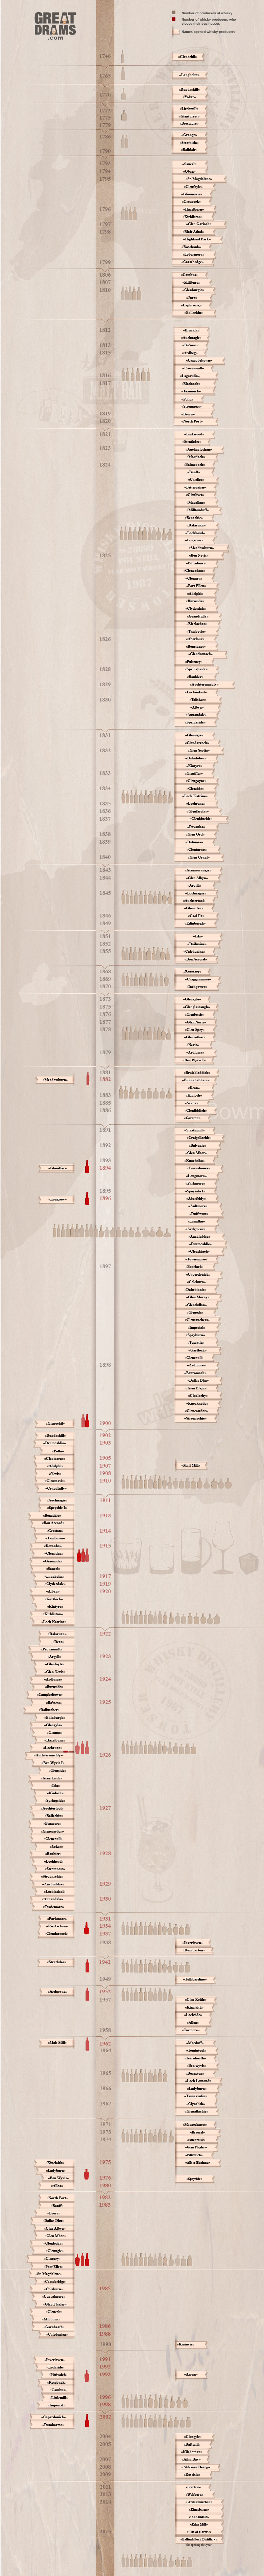 Whisky distillery timeline